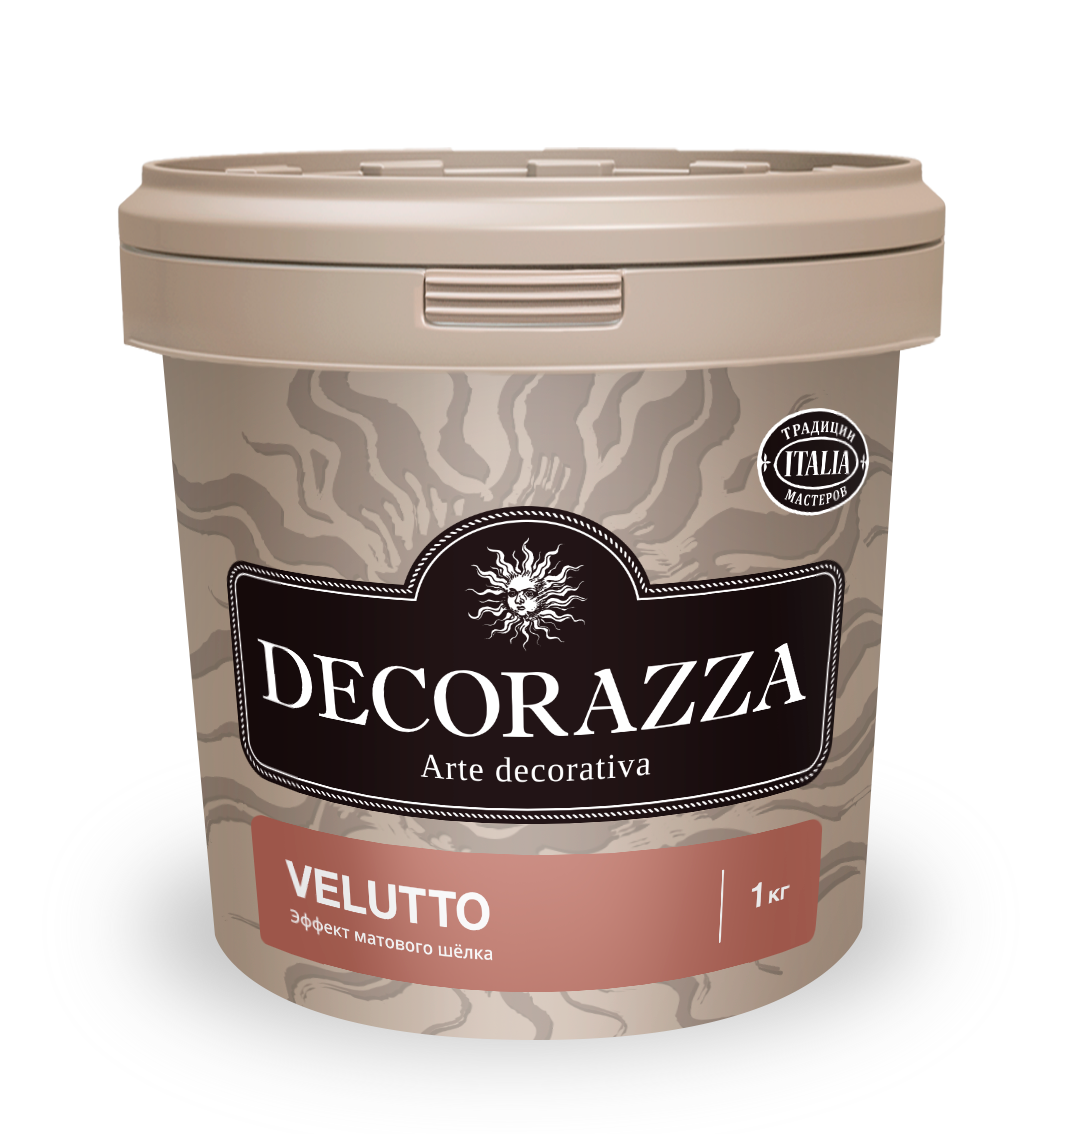 Декоративная штукатурка Decorazza Velluto VT 001, 1 кг декоративная штукатурка decorazza velluto vt 001 1 кг